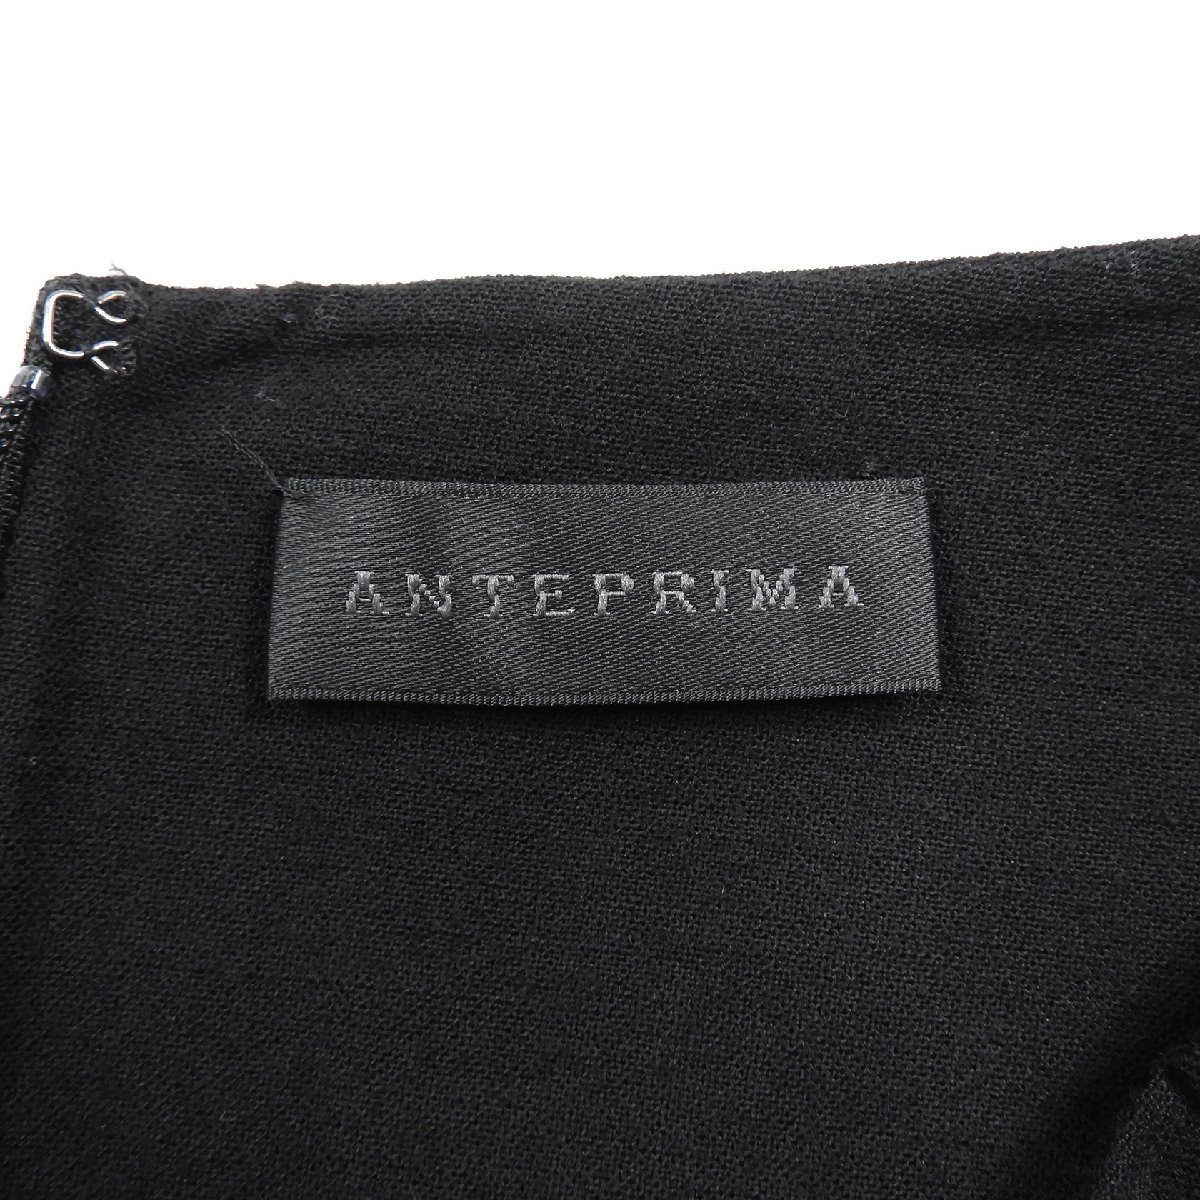 ANTEPRIMA アンテプリマ ウール ノースリーブ ワンピース ブラック size 38 #17046 レディース ワンピ ドレス きれいめ_画像3